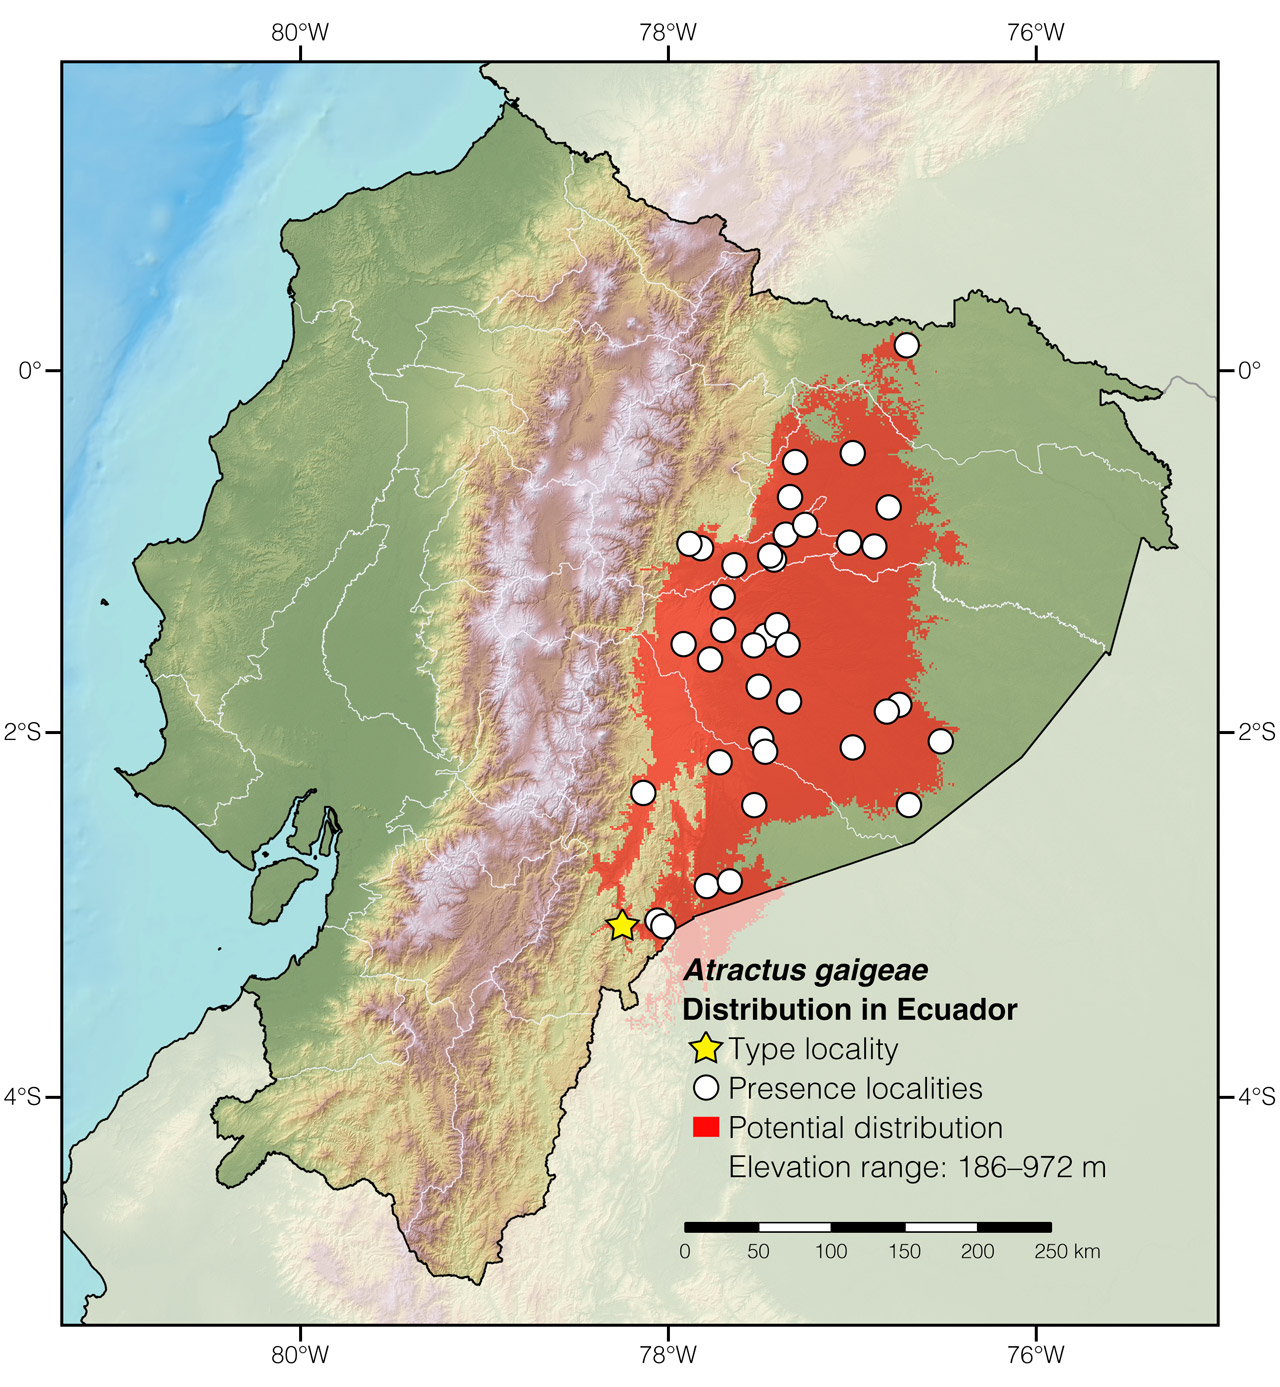 Distribution of Atractus gaigeae in Ecuador